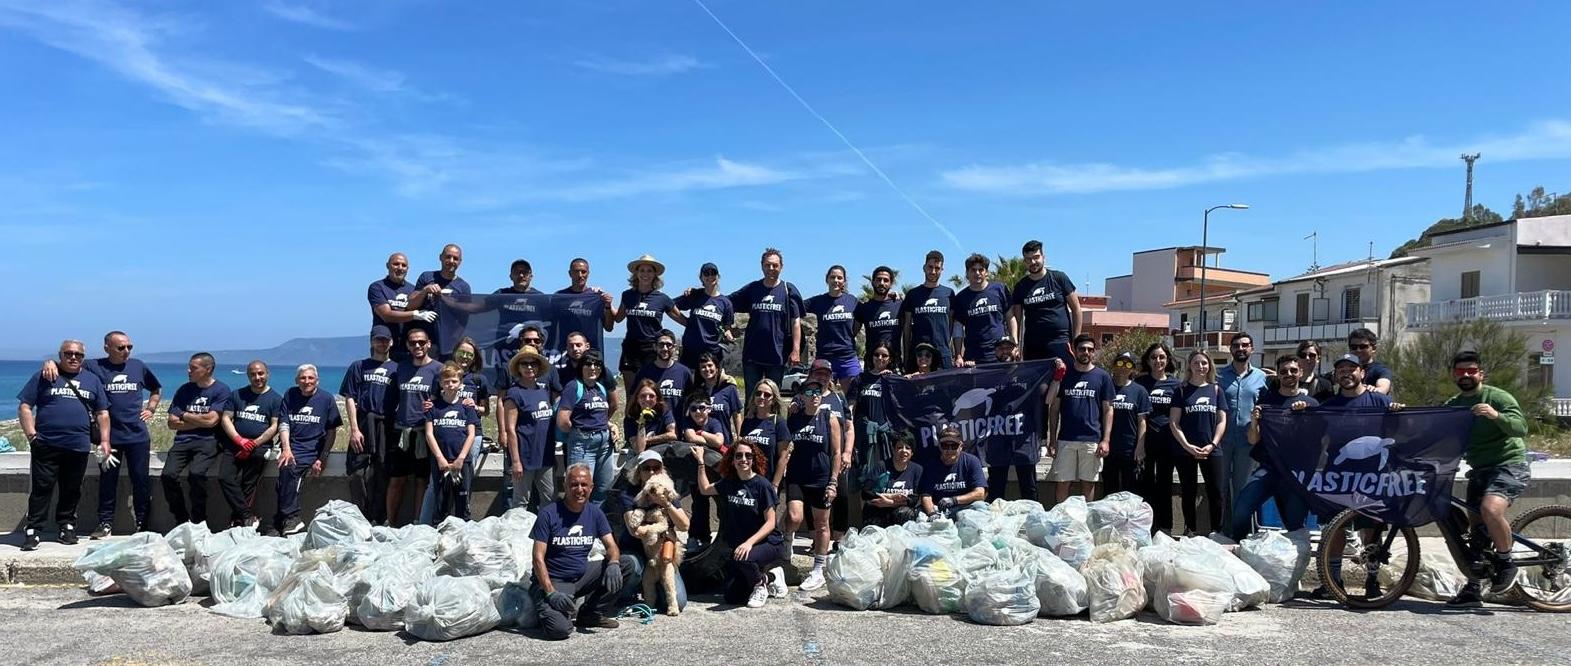 Campania: detenuti “Seconda chance” e volontari “Plastic Free” a ripulire spiagge